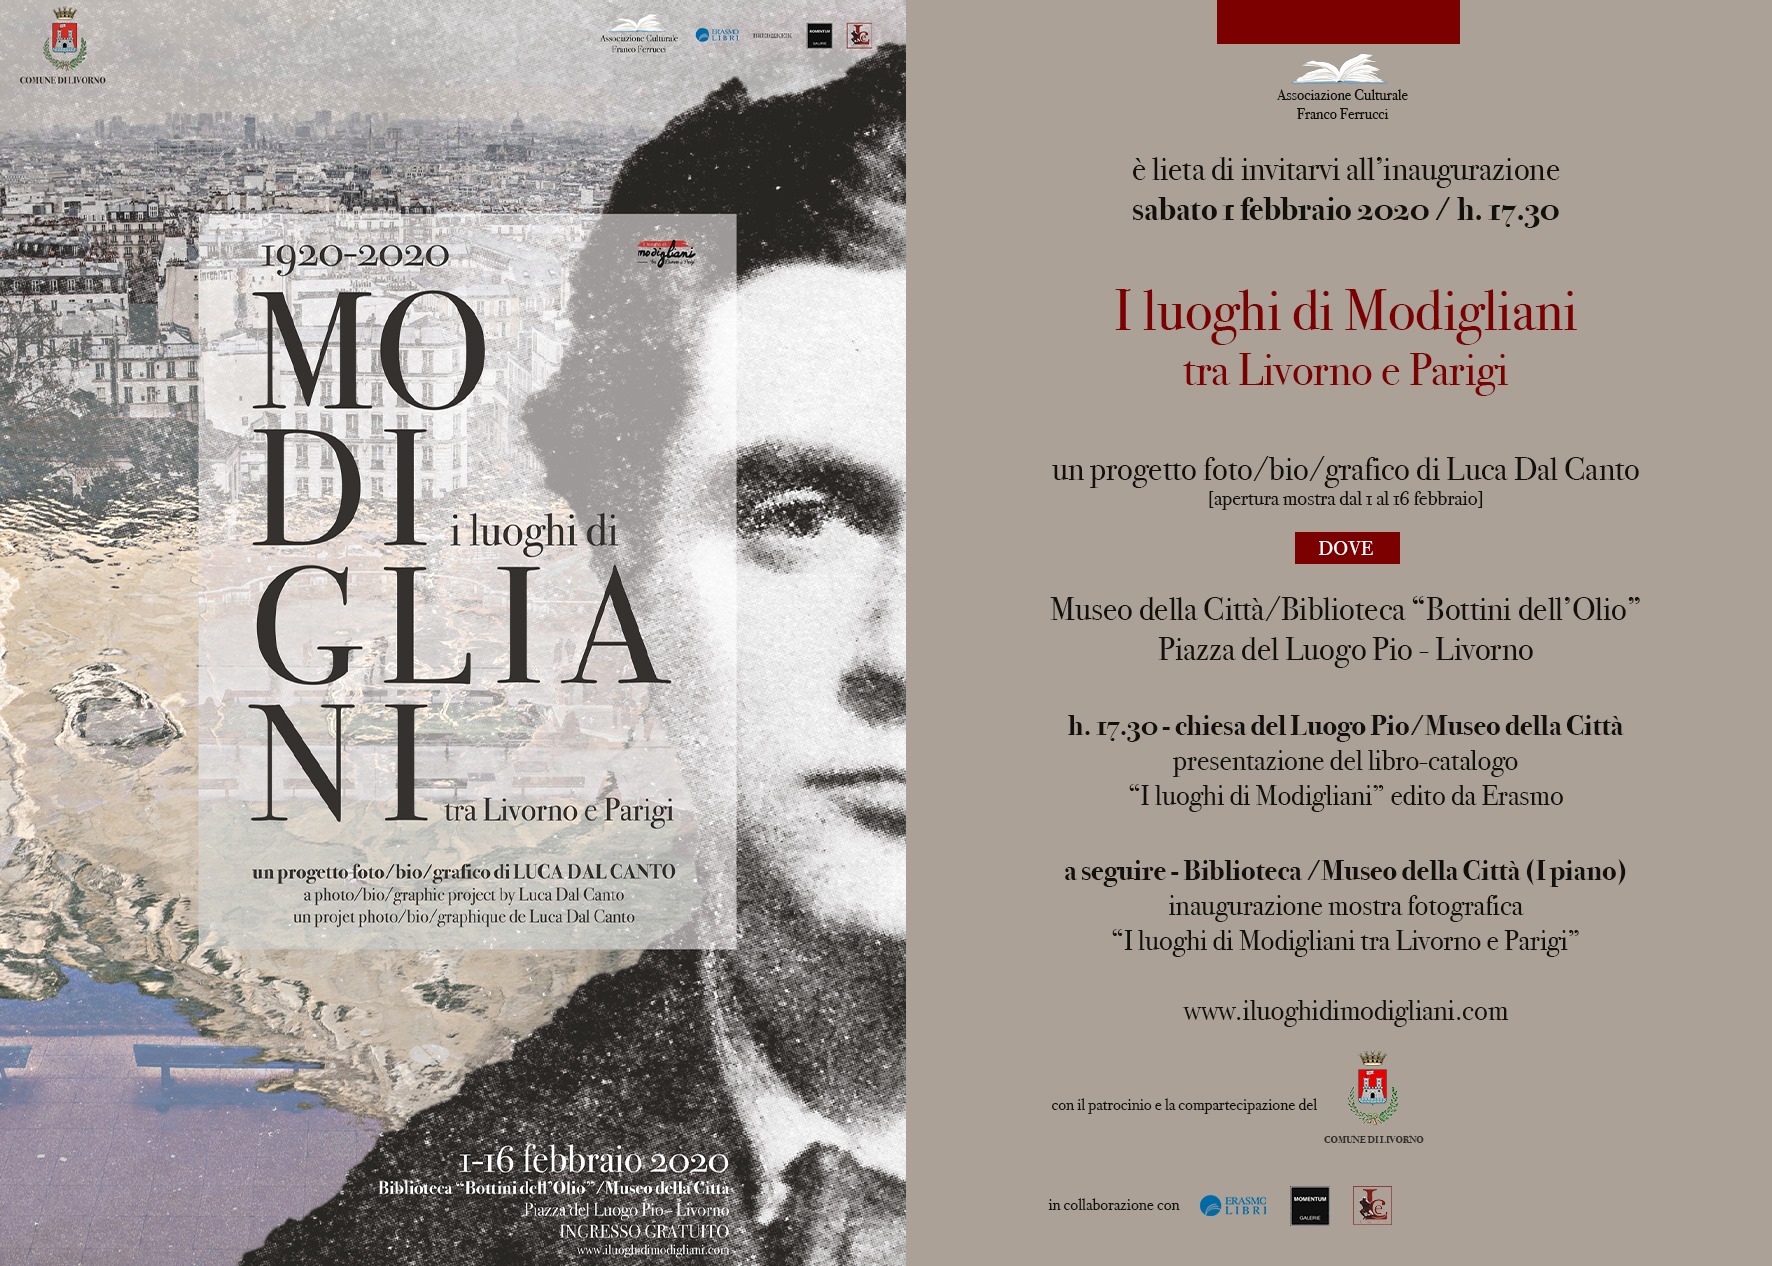 Inaugurazione mostra foto(bio)grafica 'I luoghi di Modigliani' - biblioteca Bottini dell'Olio